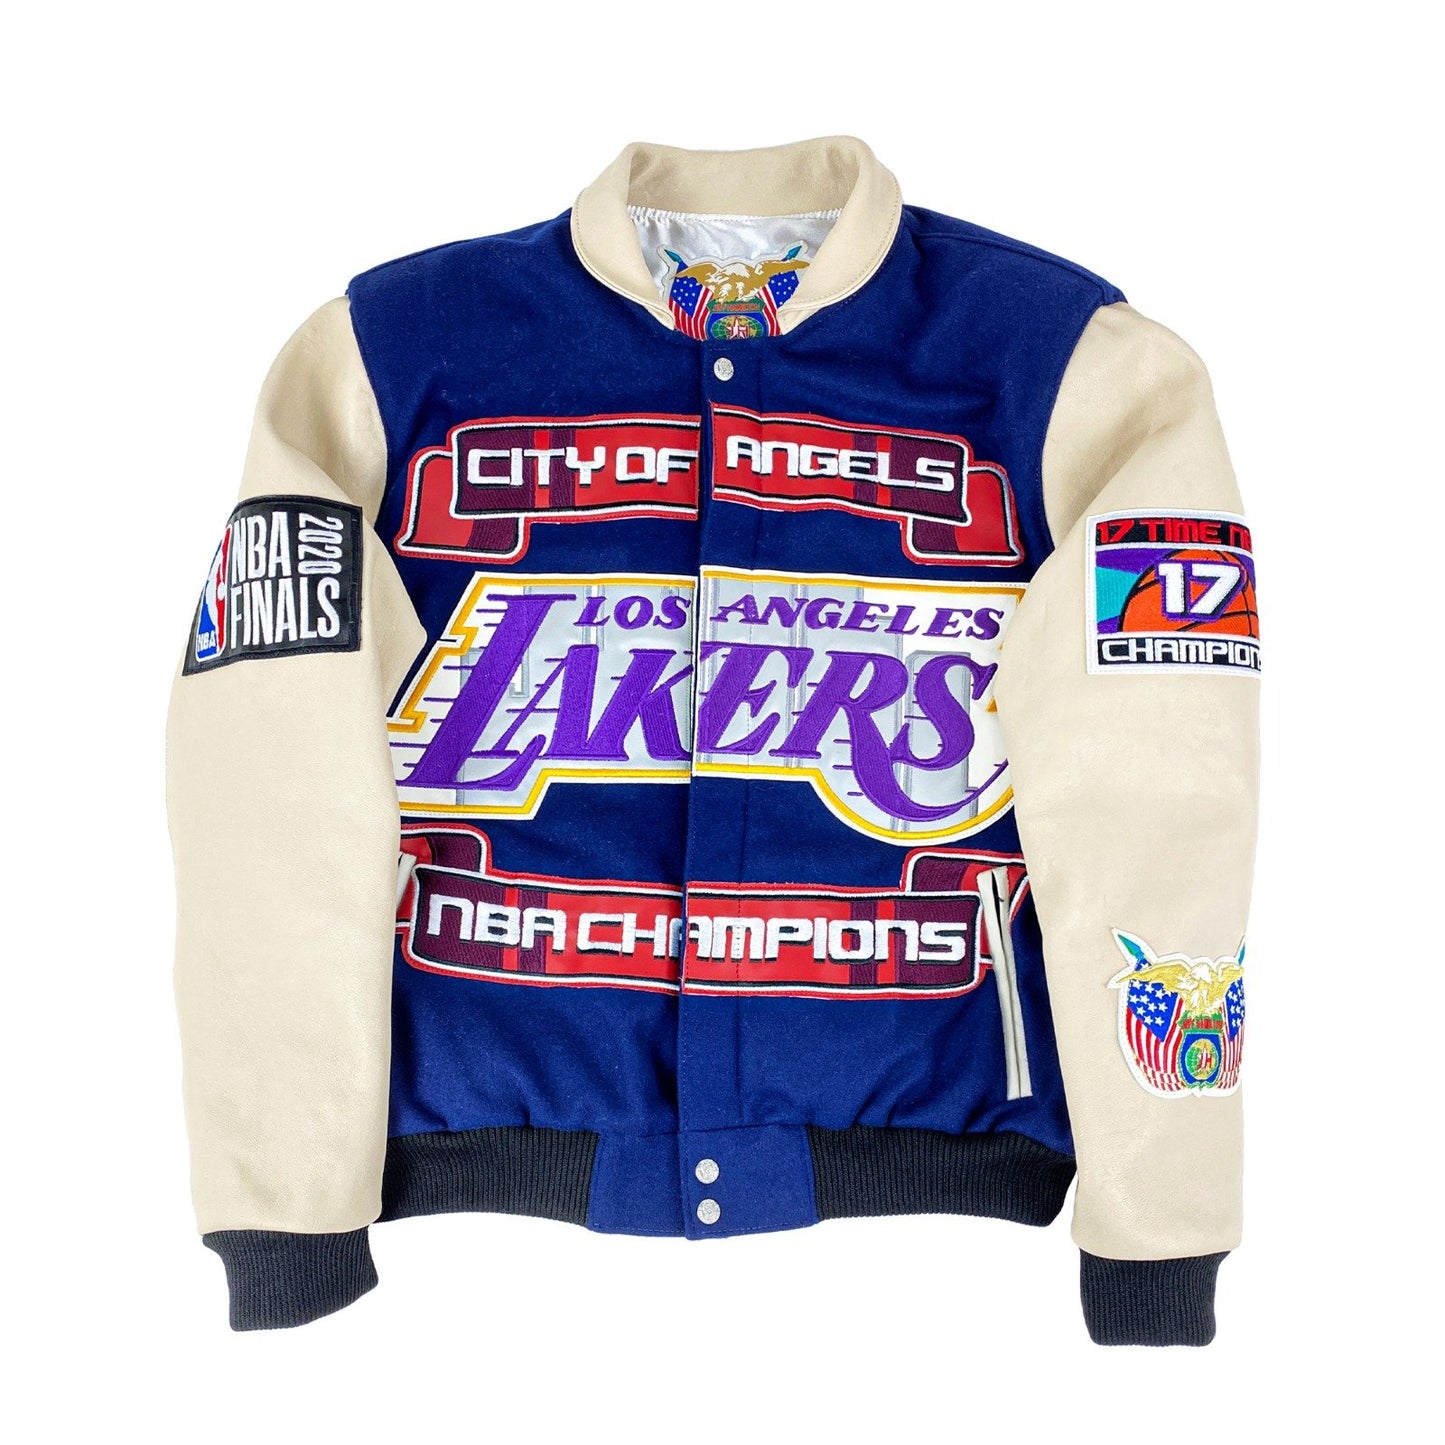 Mitchell & Ness Lakers Championship Jackets, LA Lakers Jacket